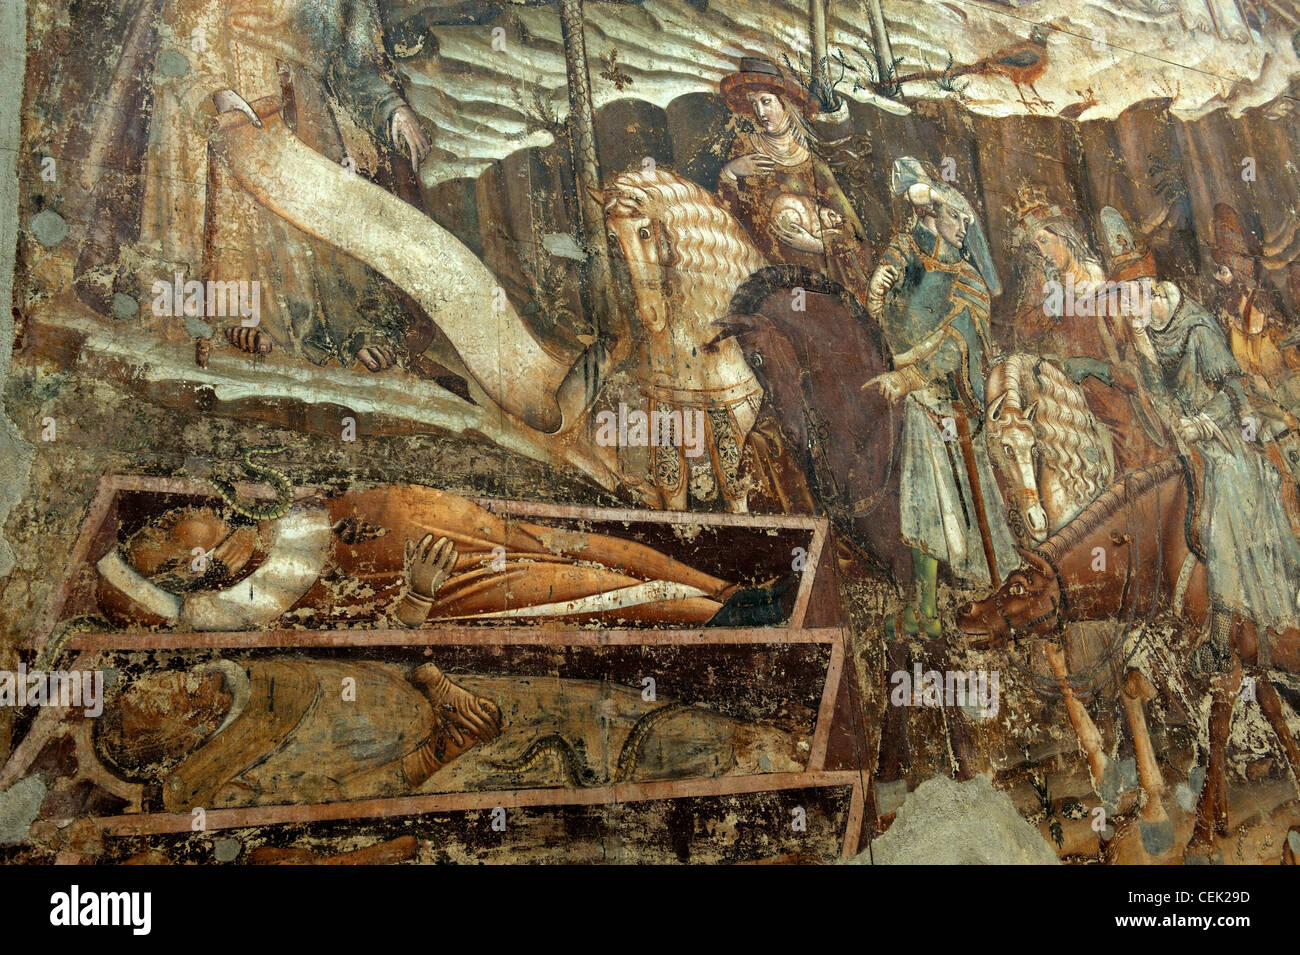 Dettaglio da 14 C del Trionfo della morte da Bonamico di Martino da Firenze, Buffalmacco, nel Camposanto, Pisa, Toscana, Italia Foto Stock